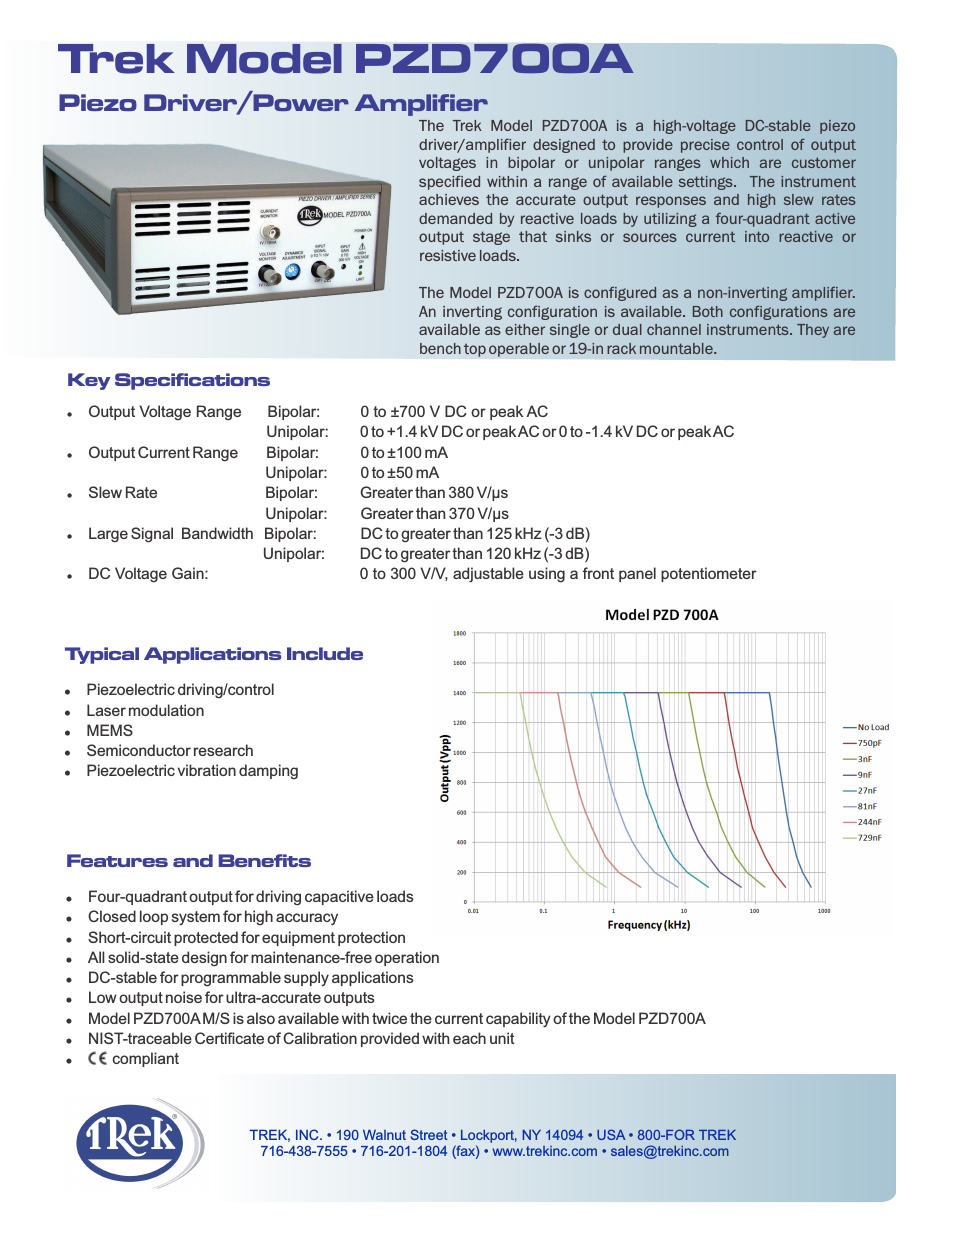 PZD700A Piezo Driver-Power Amplifier